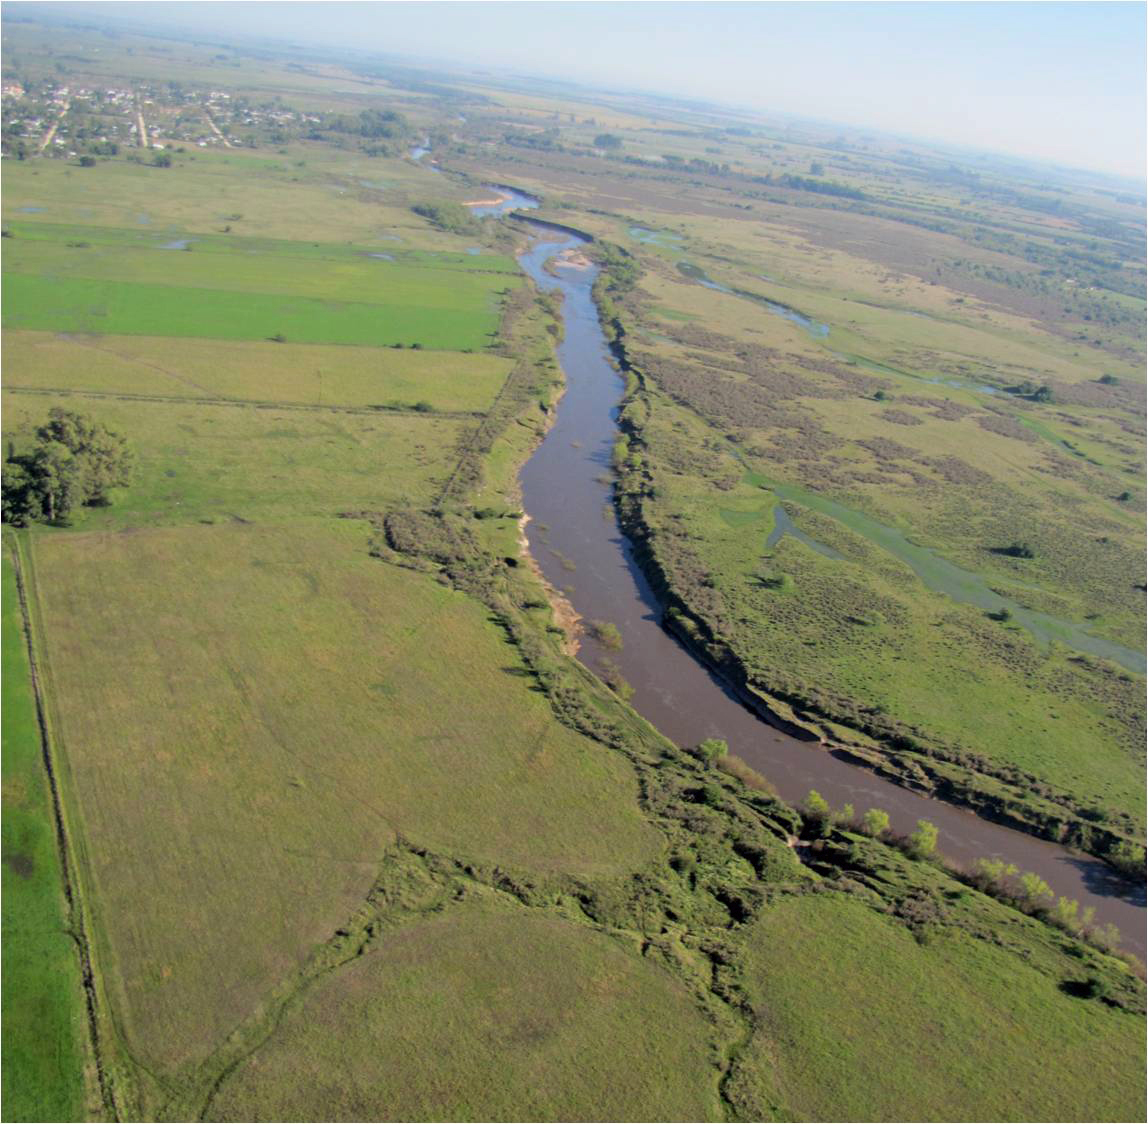 Río Santa Lucía desde el aire. Pueden verse los cultivos alcanzando la orilla del río. / Foto: Waterlat Gobacit.